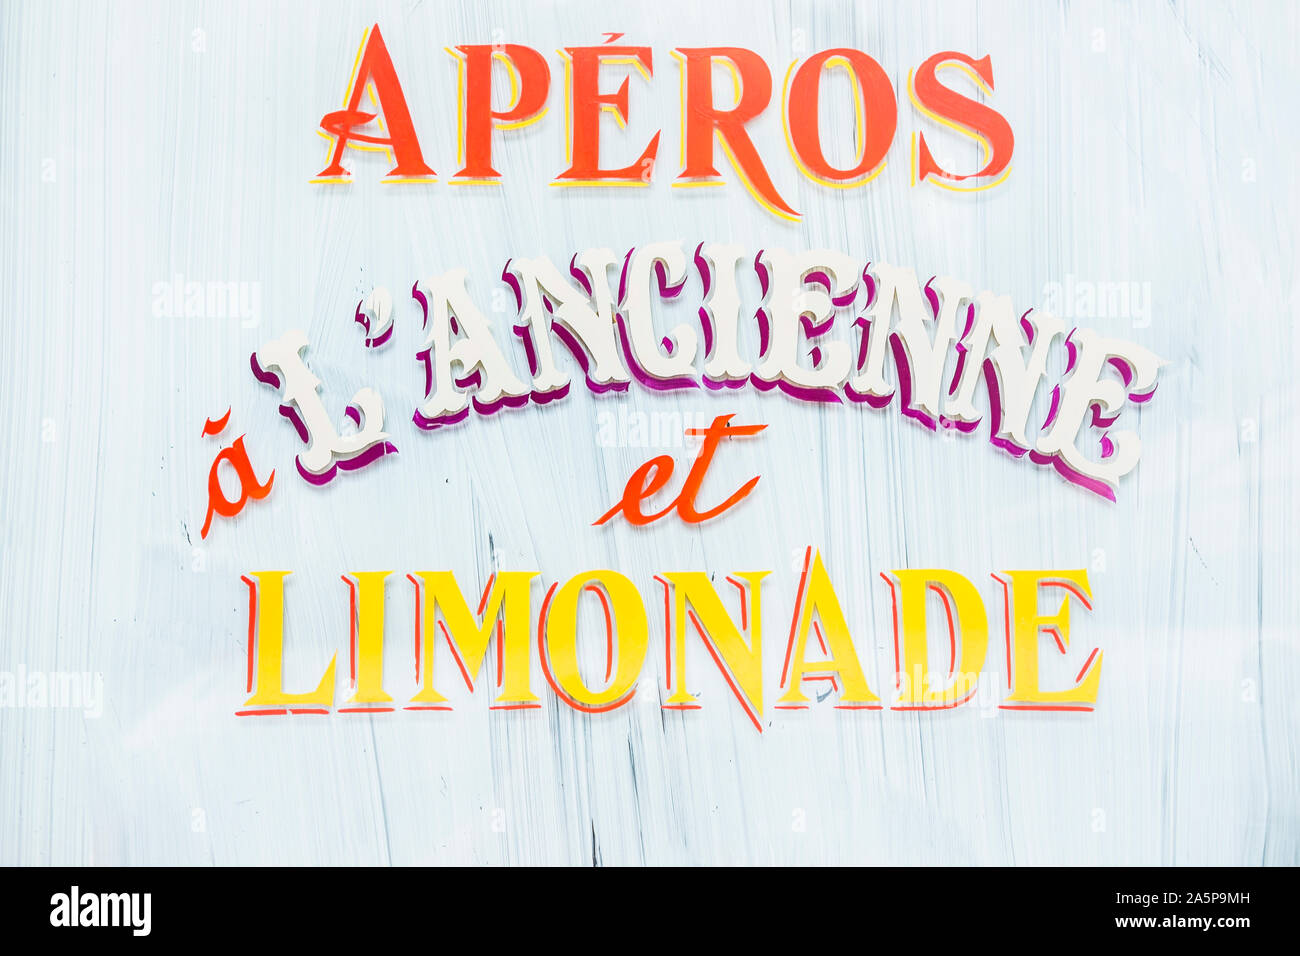 Aperos a l'ancienne et Limonade, alte Schule Schriftzug auf weißem Glas Farbe Stockfoto